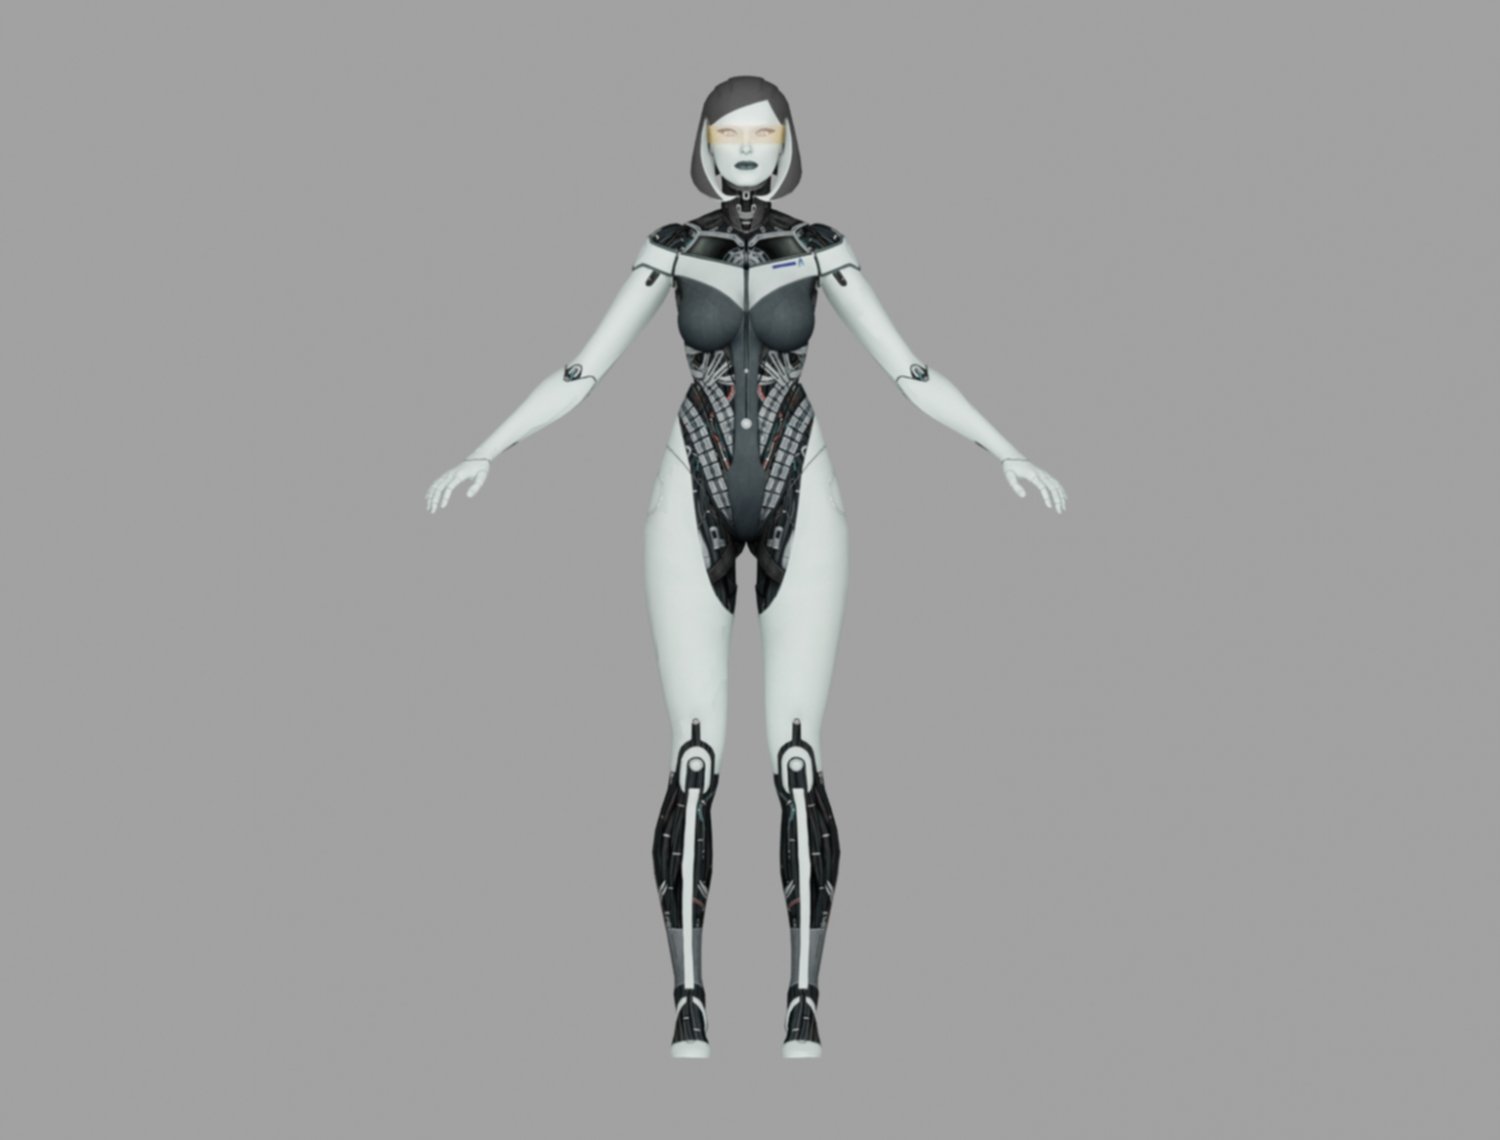 edi suit Gratis Modelo 3D in Robot 3DExport